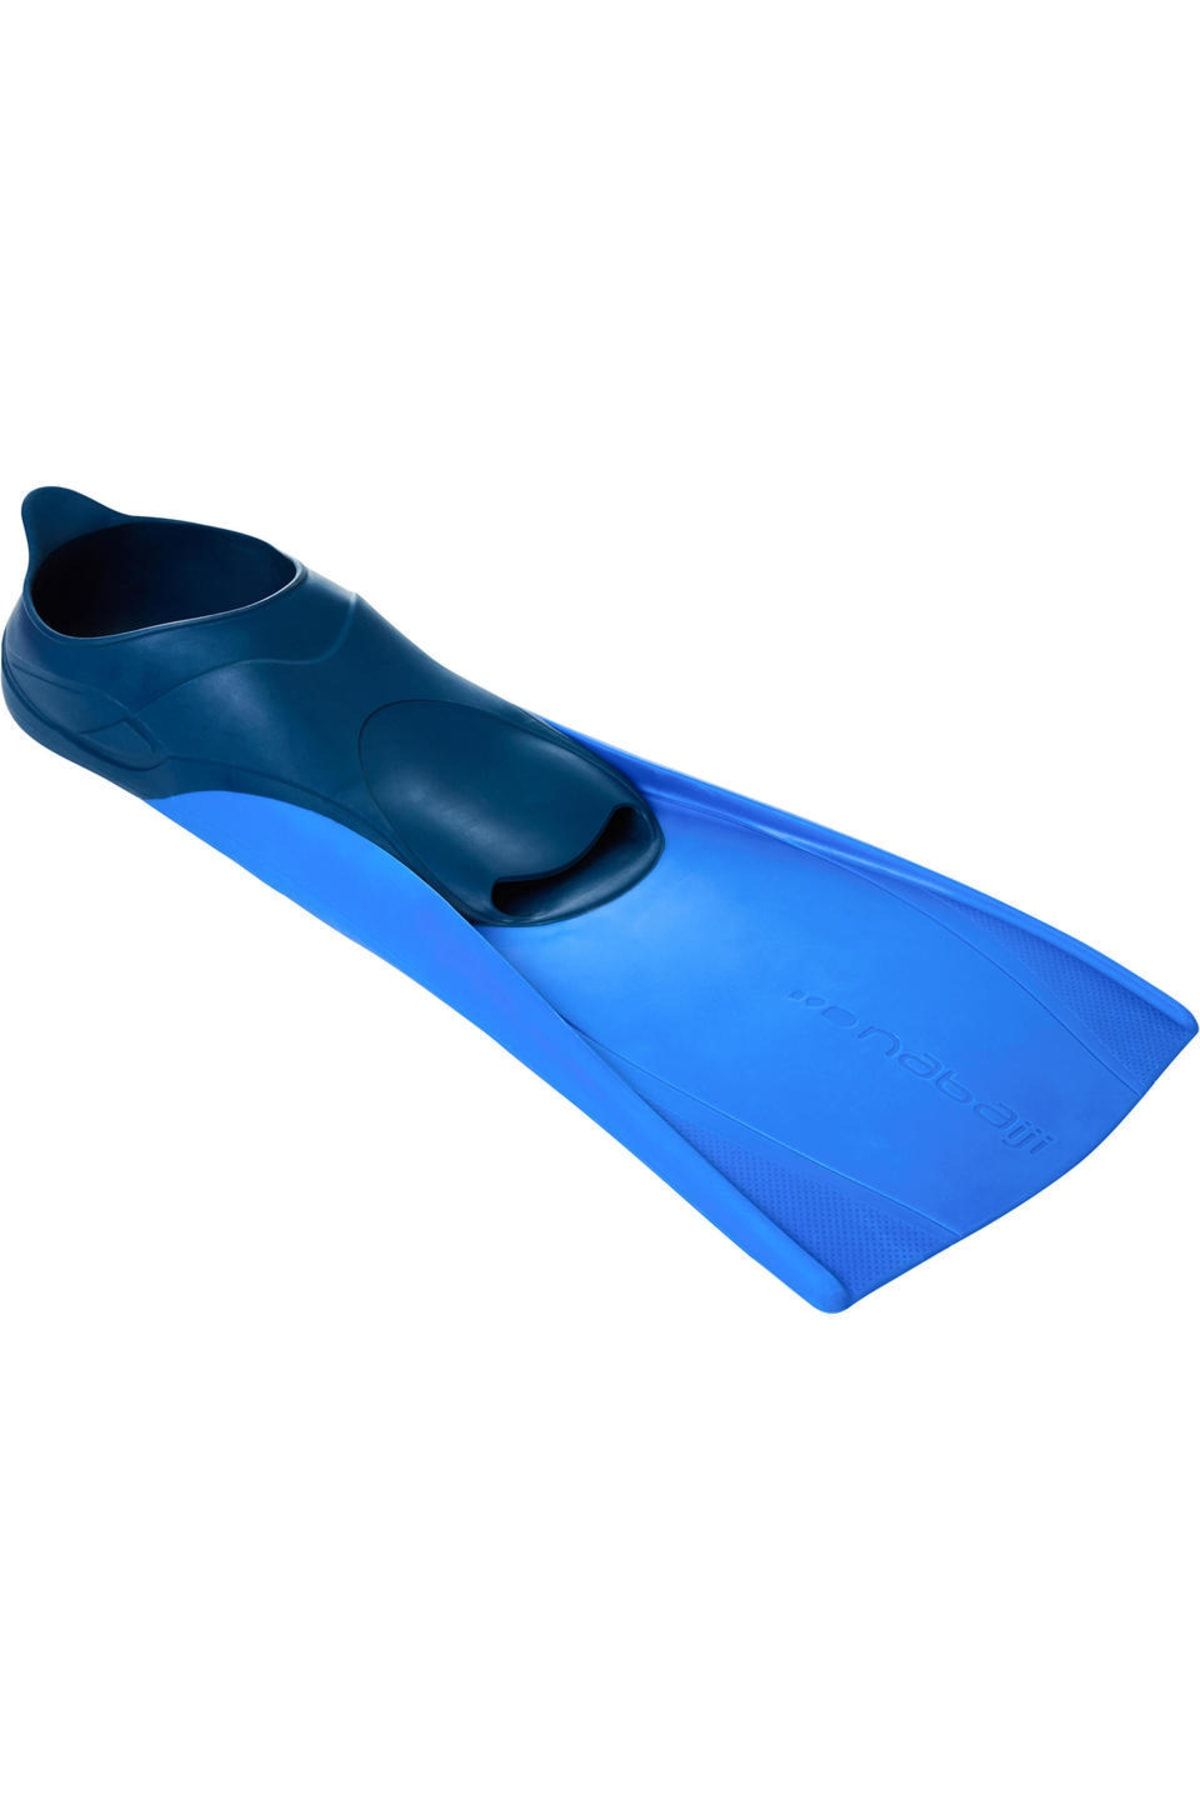 Decathlon - Palet Yüzücü Paleti Yüzme Paleti Uzun Palet Mavi